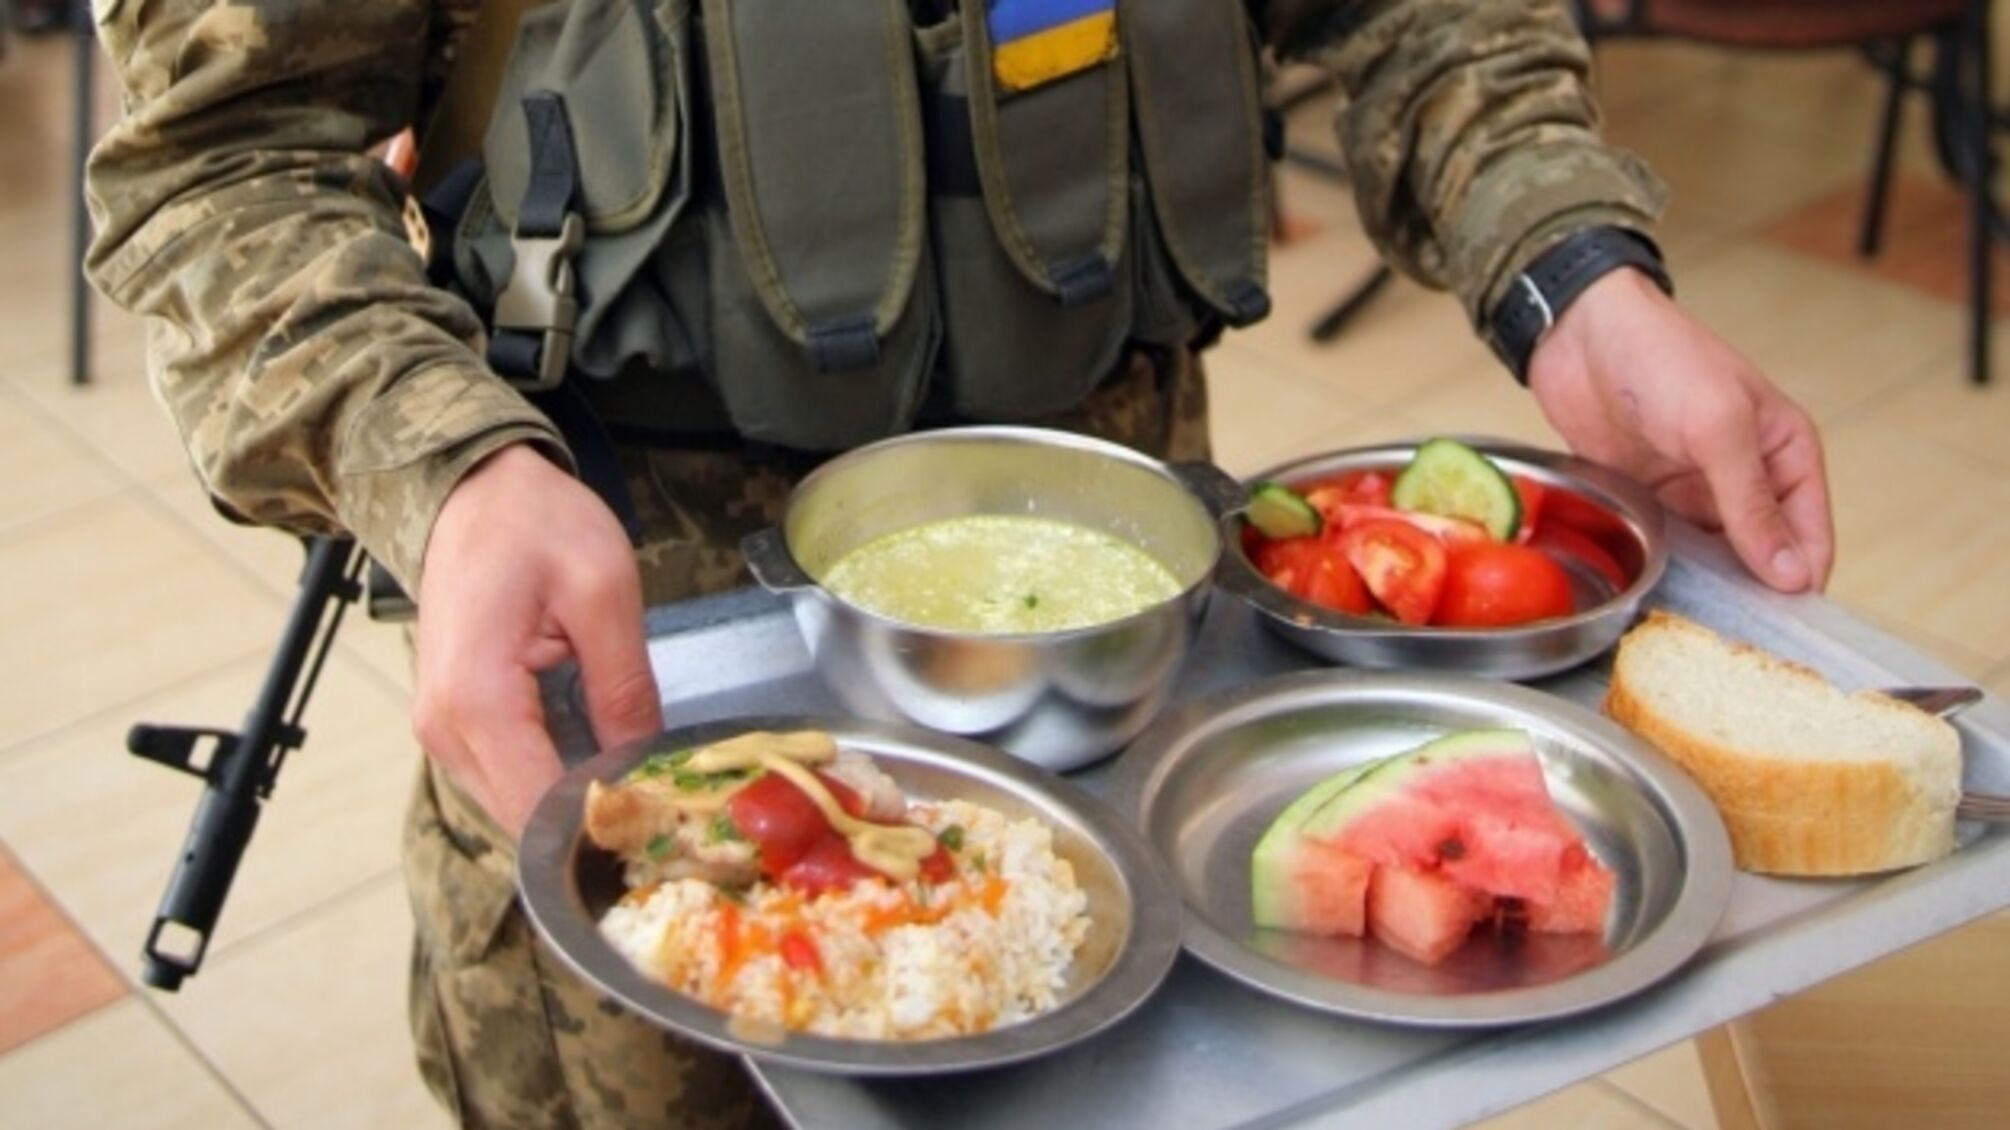 Украинских военнослужащих хотели накормить 362 тоннами некачественных продуктов: в Минобороны заблокировали тендер